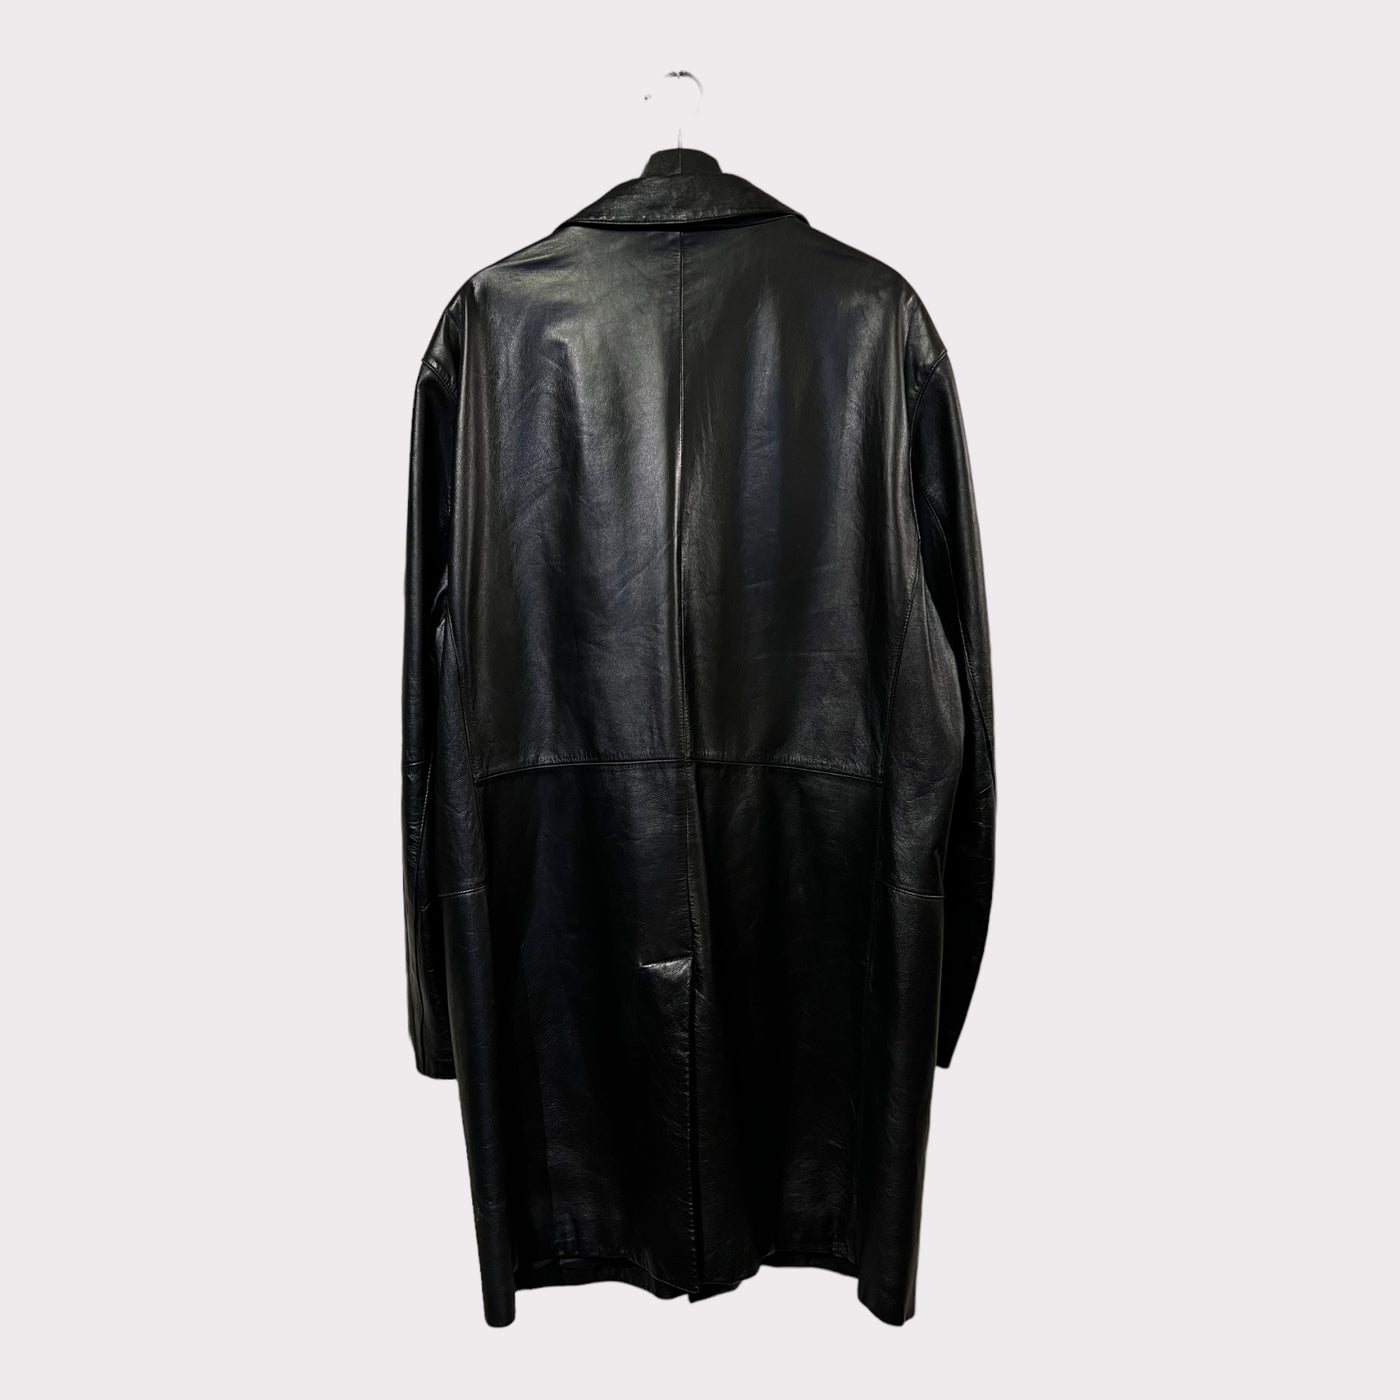 Leather blazer jacket "Long"